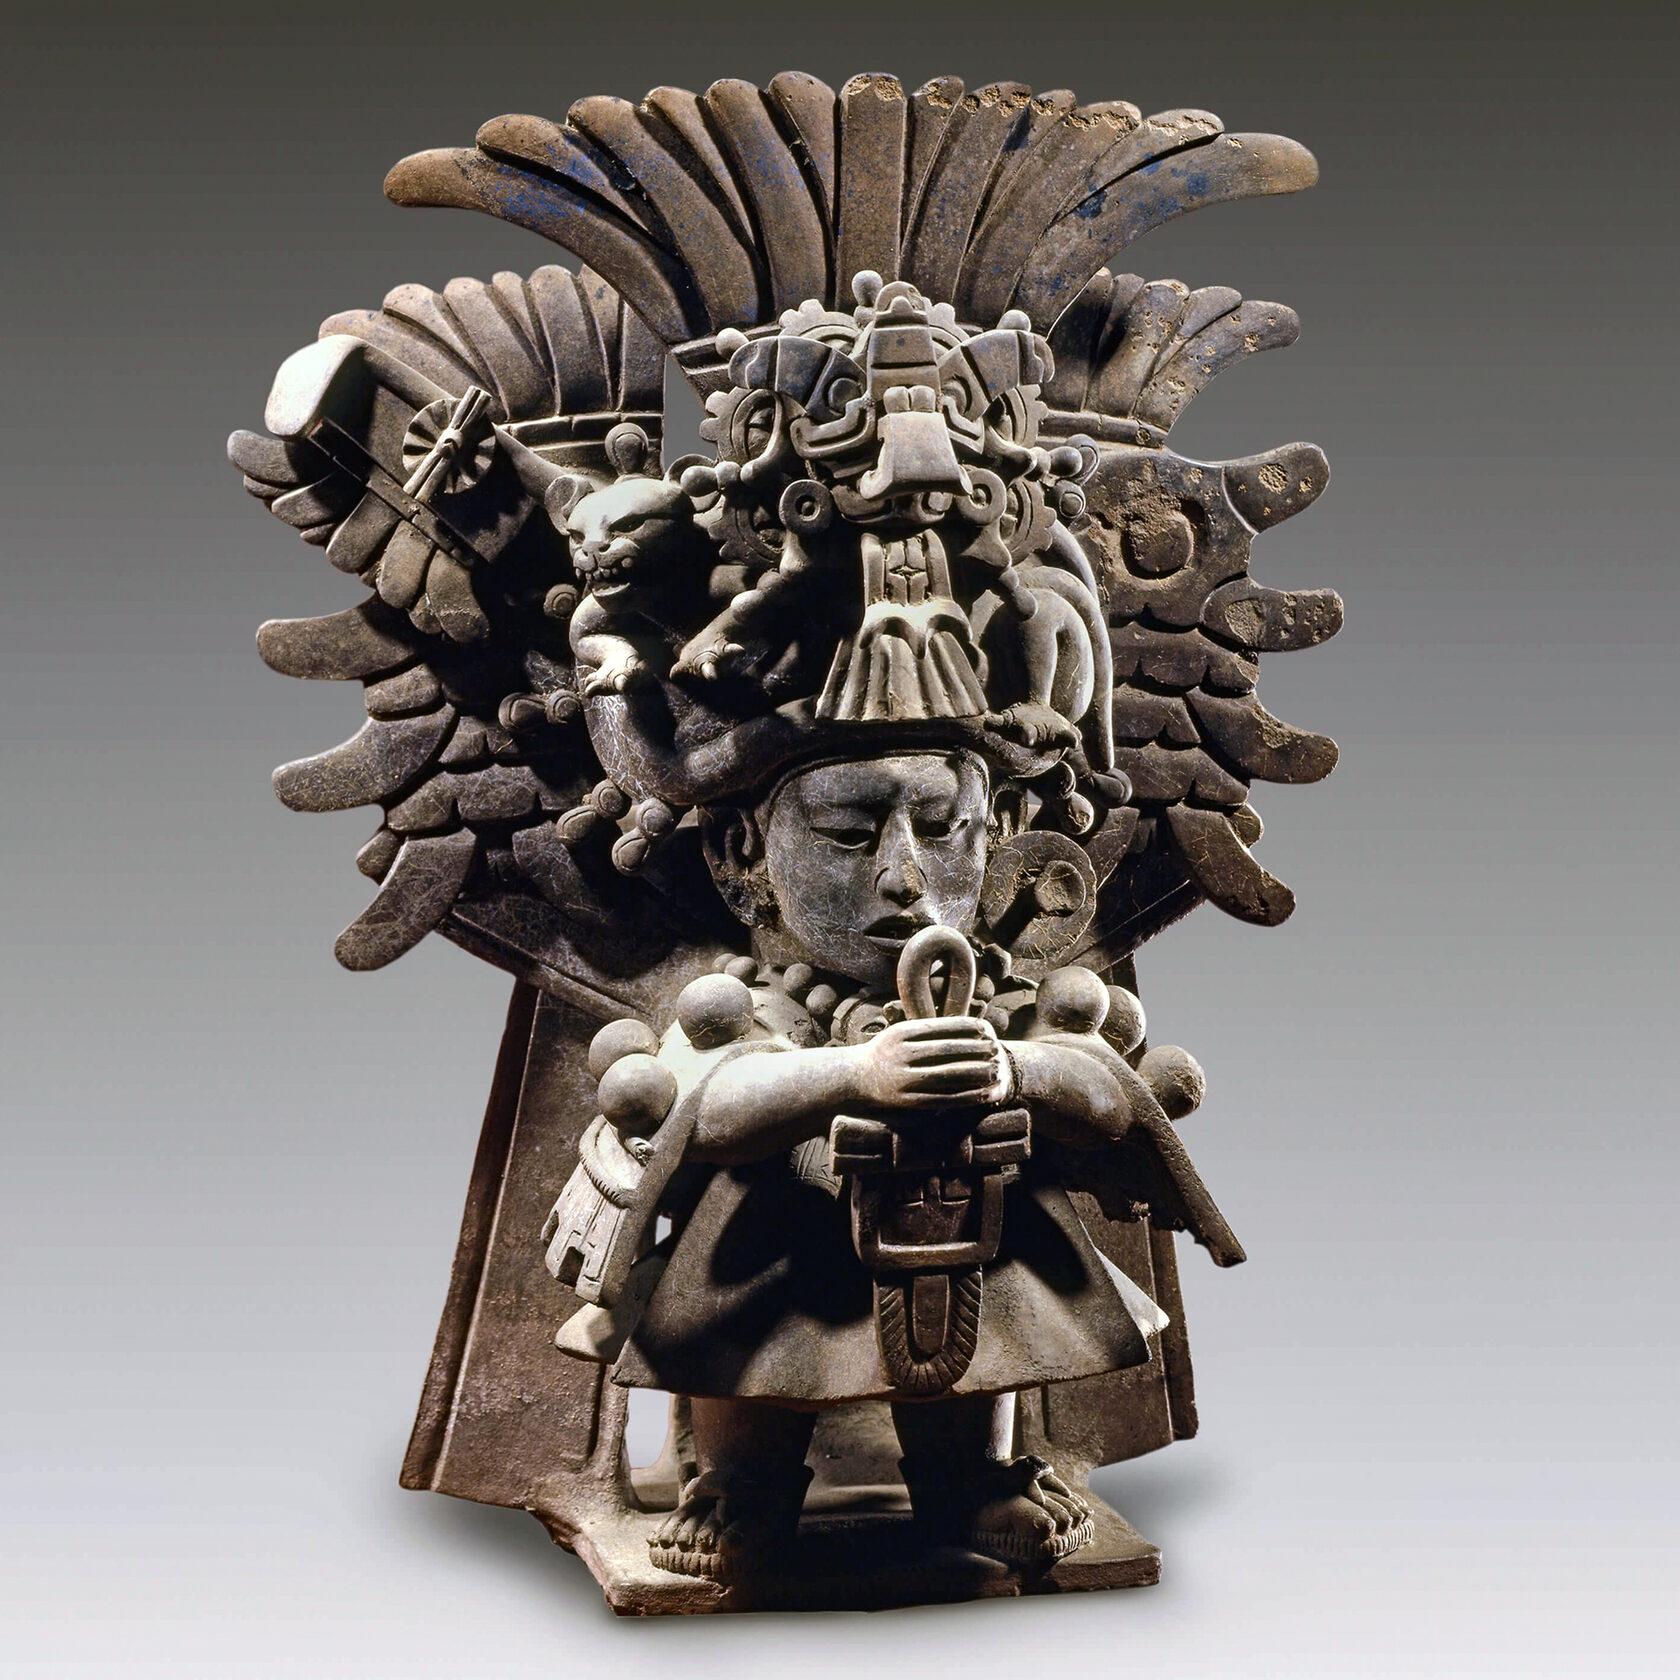 Фигура жреца. Сапотеки, 200-600 гг. н.э. Коллекция Museo Amparo, Puebla.